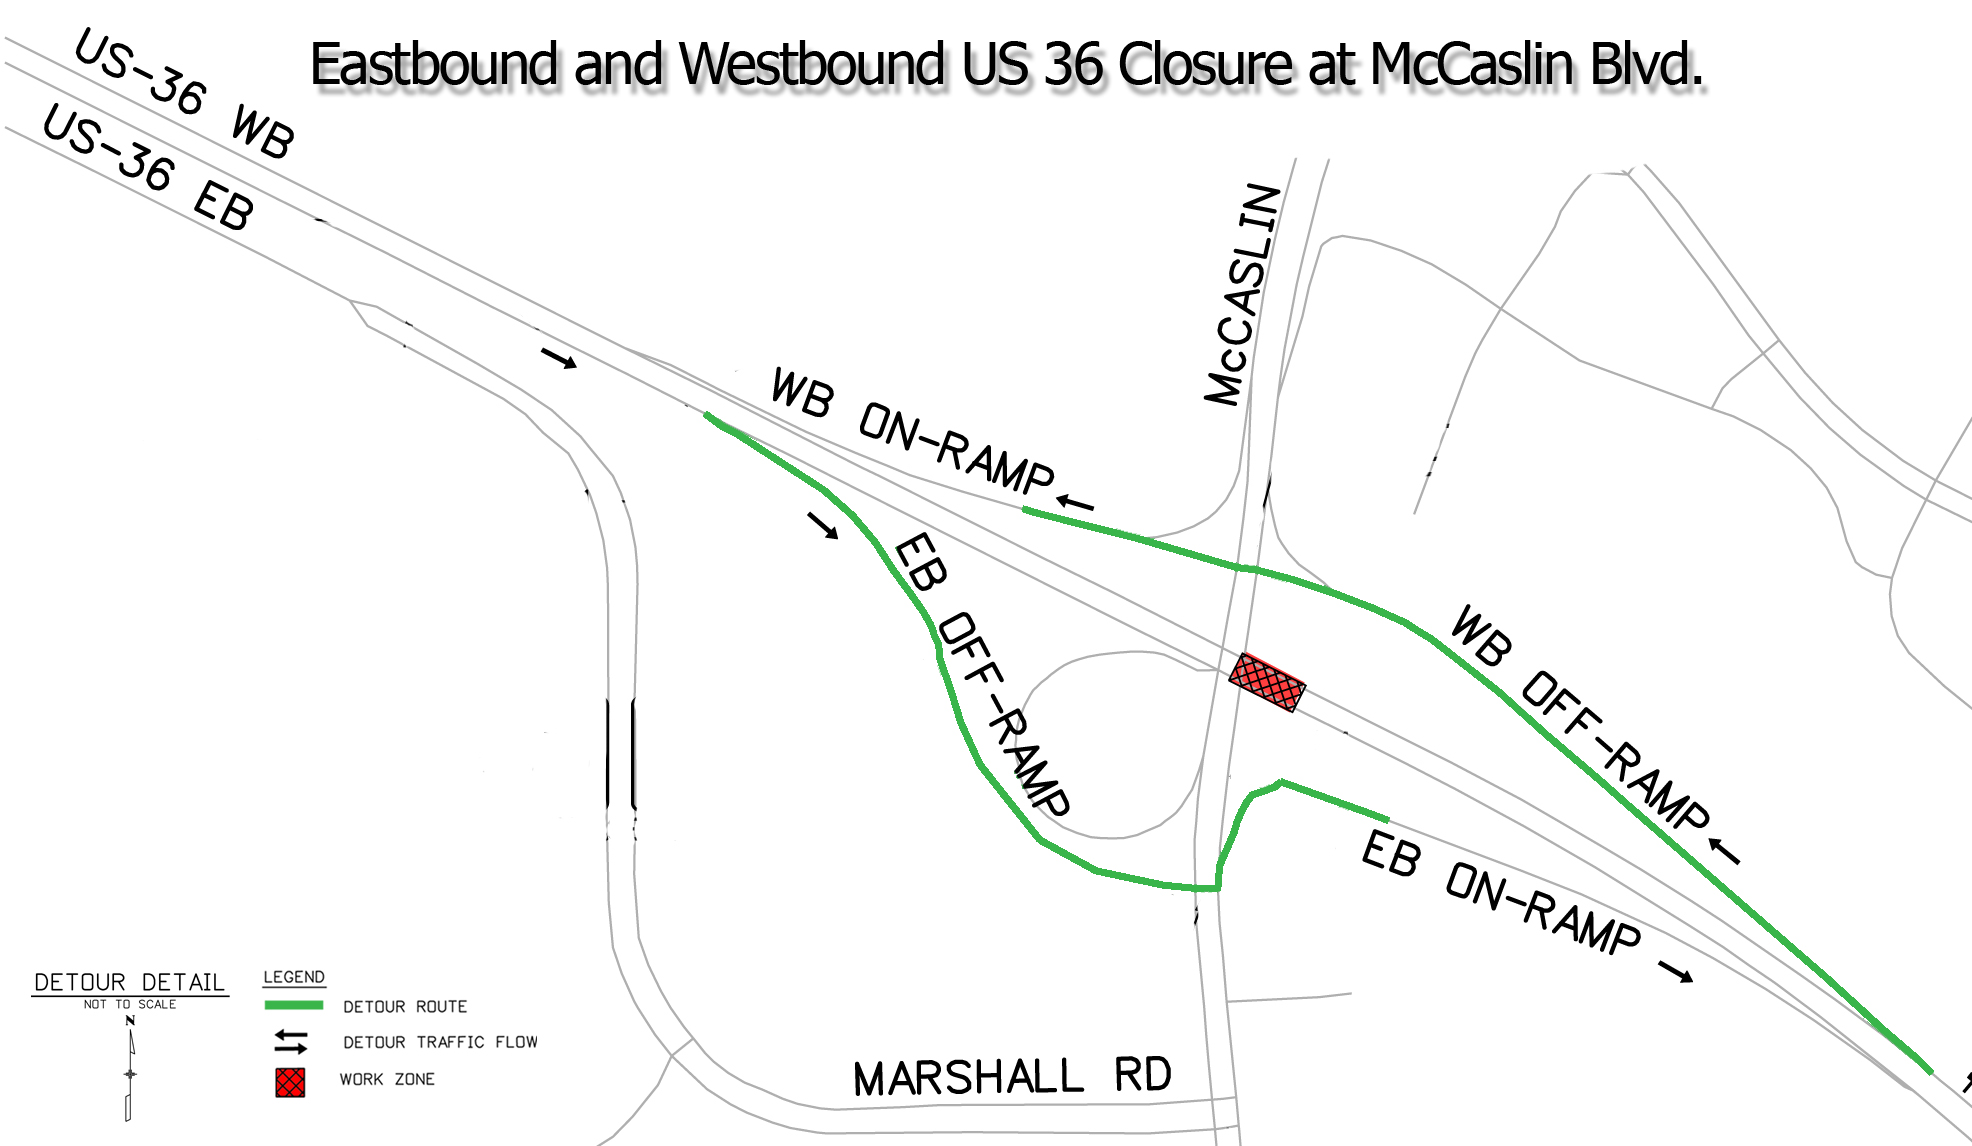 US 36 Closure at McCaslin detail image